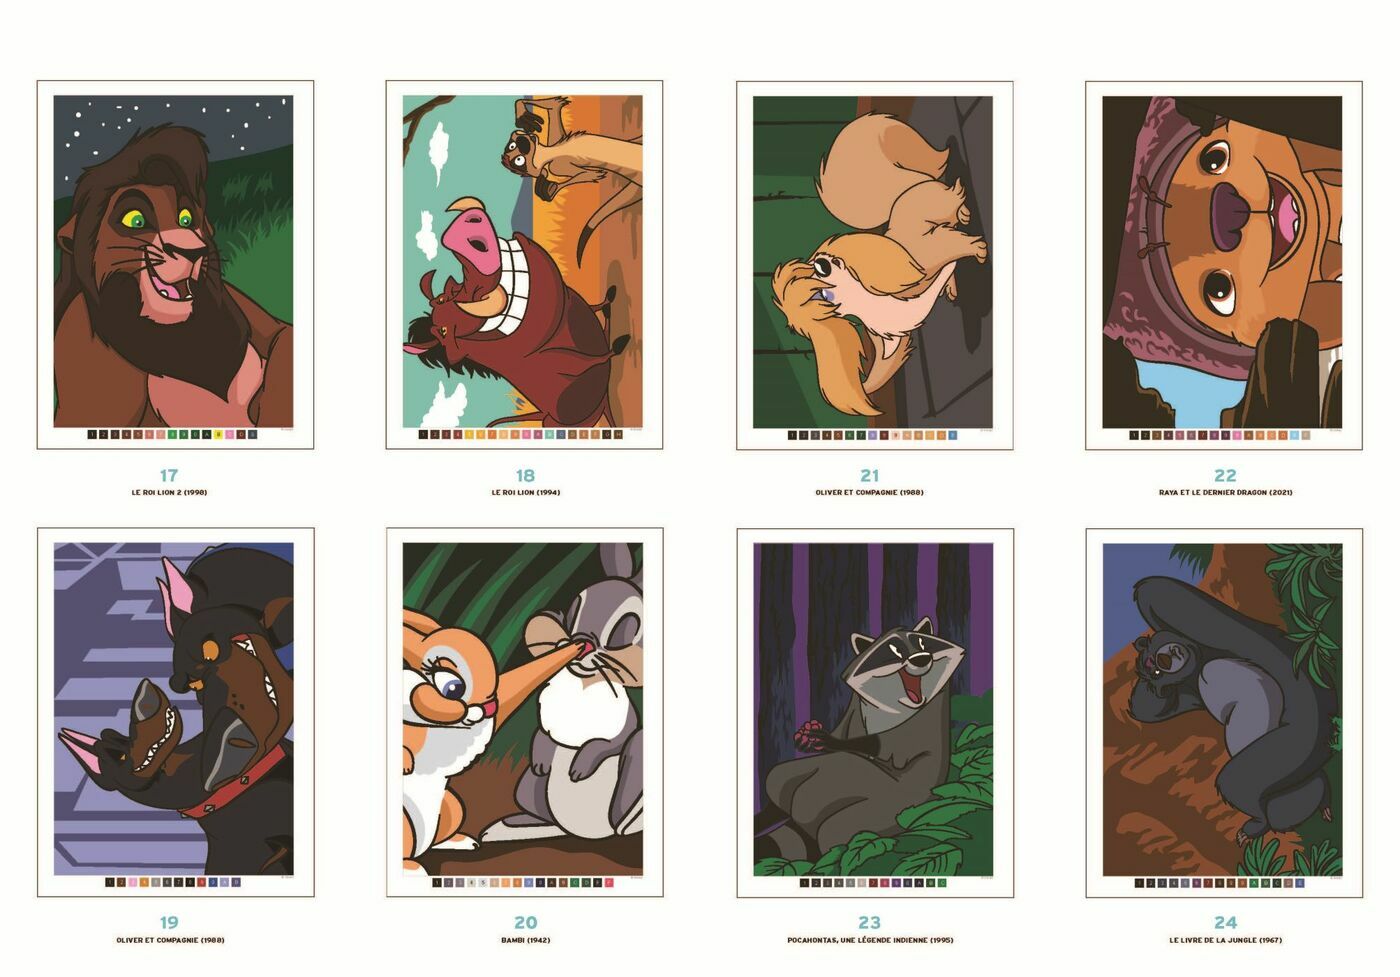 SAISONS - coloriage mystère Disney - Hachette Heroes - SOLUTIONS 